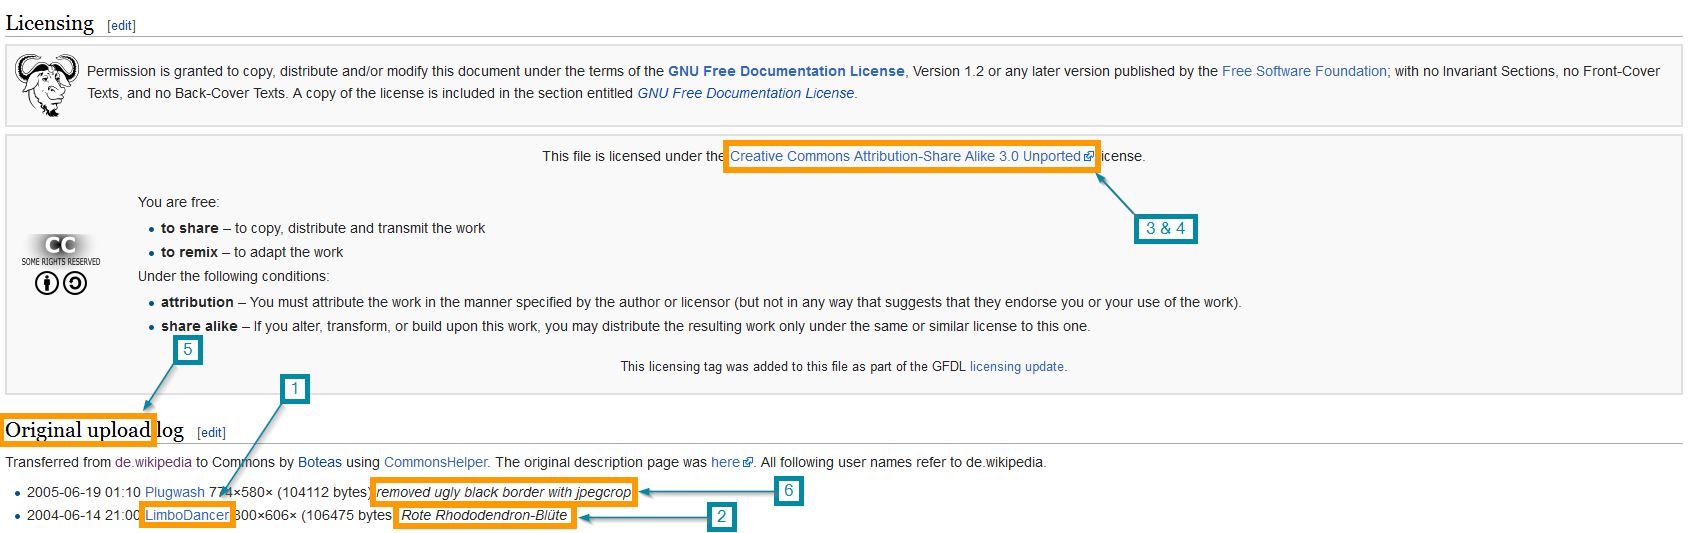 Datei:Beispiel CC Kennzeichnung in Wikipedia.jpg